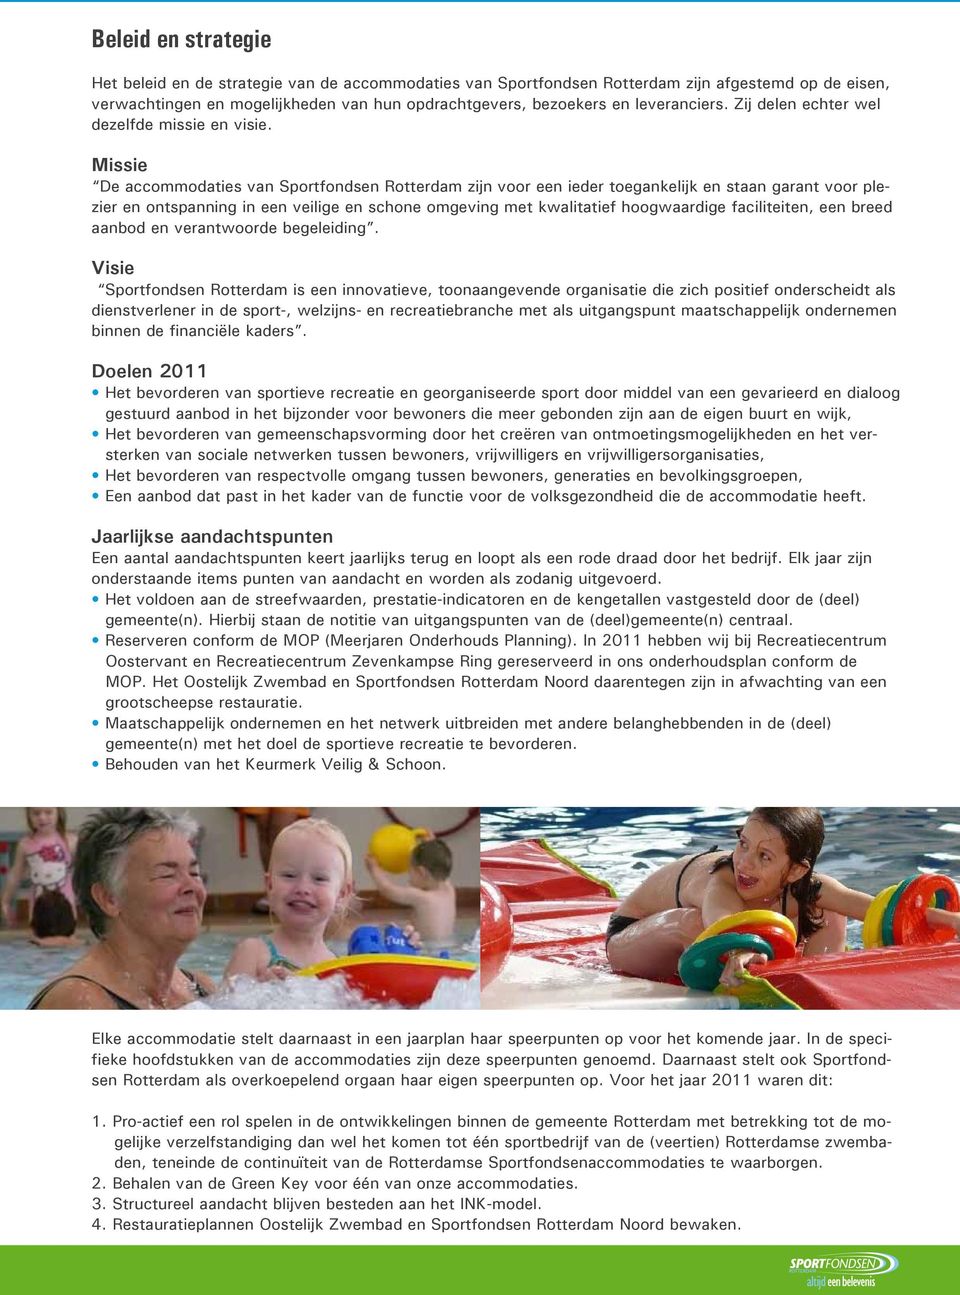 Missie De accommodaties van Sportfondsen Rotterdam zijn voor een ieder toegankelijk en staan garant voor plezier en ontspanning in een veilige en schone omgeving met kwalitatief hoogwaardige